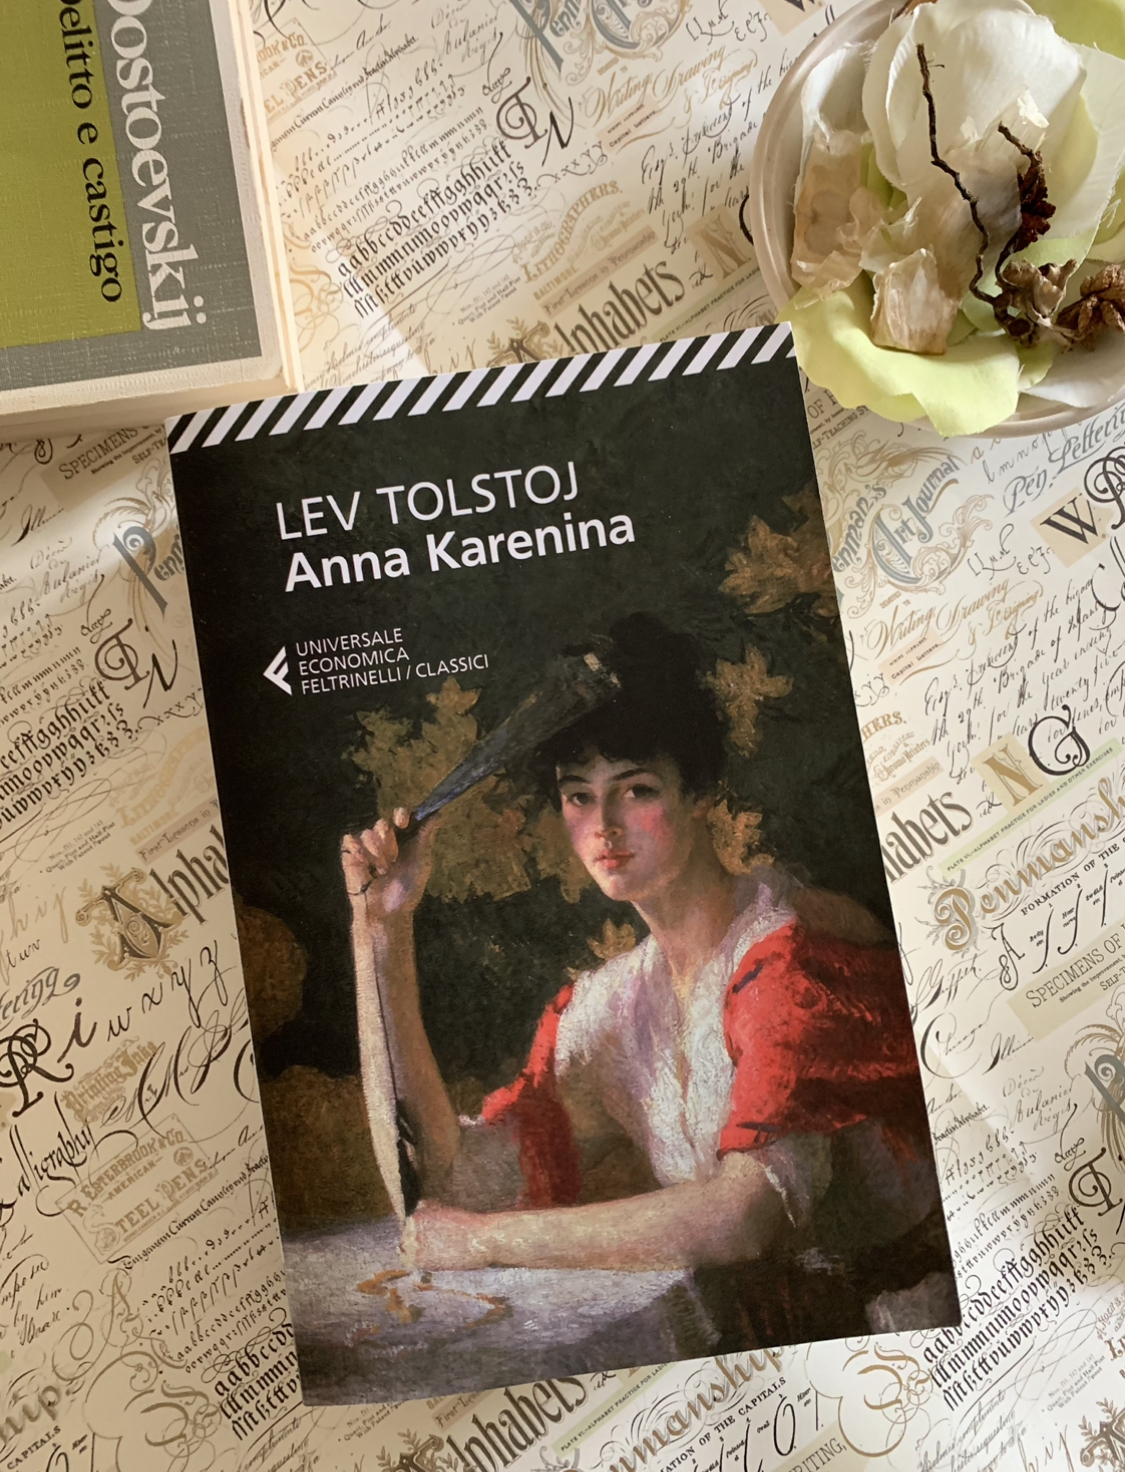 Innamorarsi di Anna Karenina il sabto sera - Abbiamo letto - ilRecensore.it